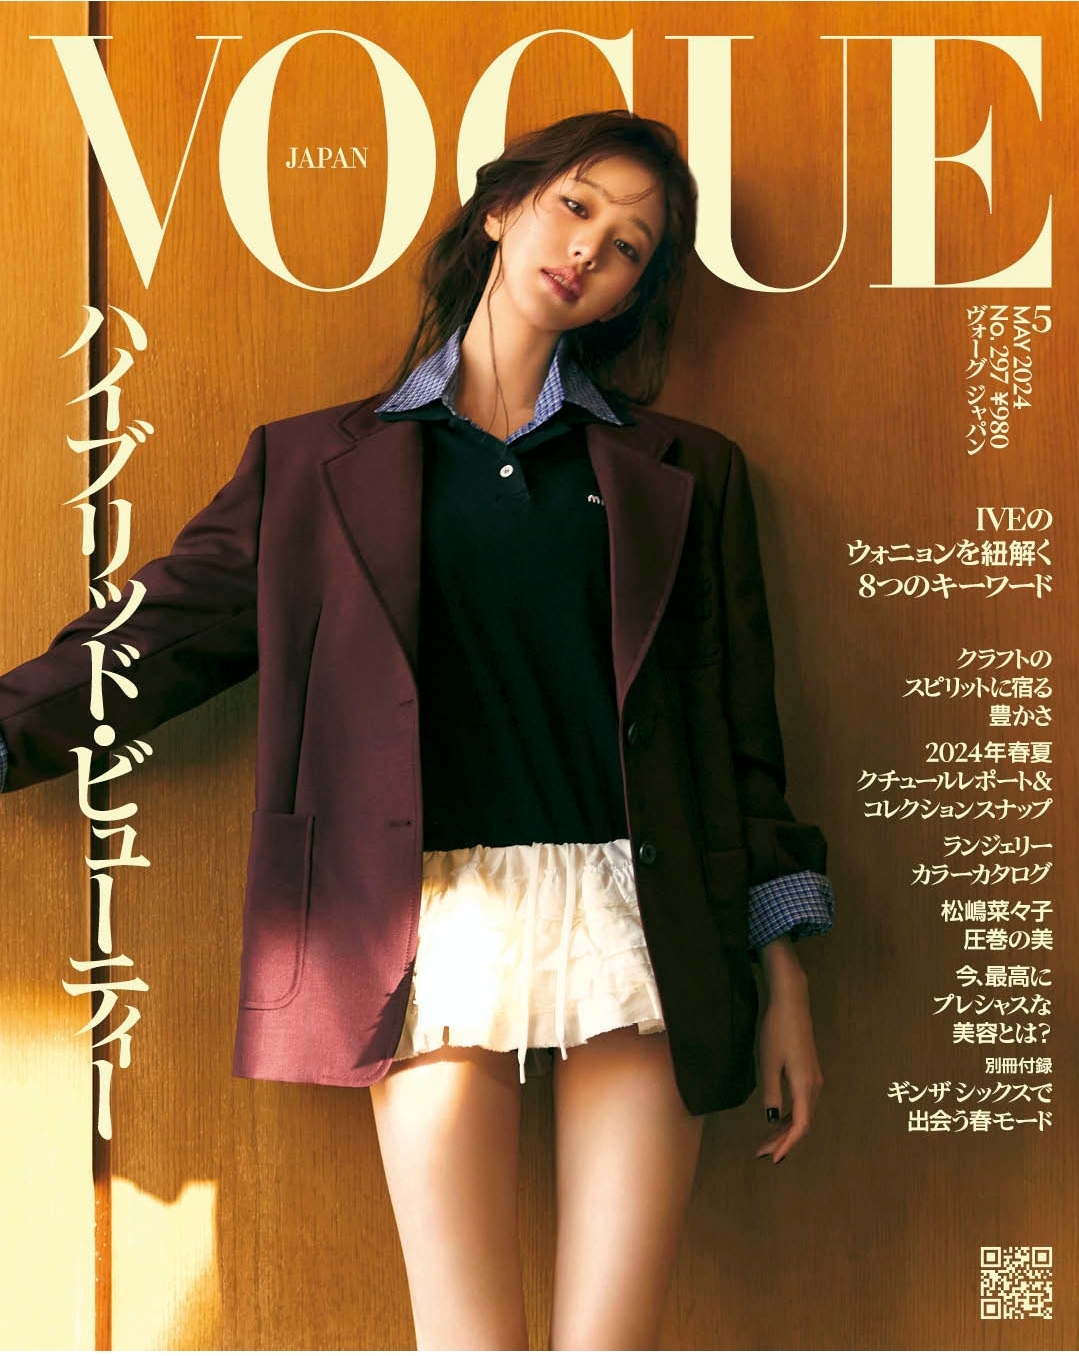 [閒聊] 張員瑛<Vogue Japan>5月號封面畫報